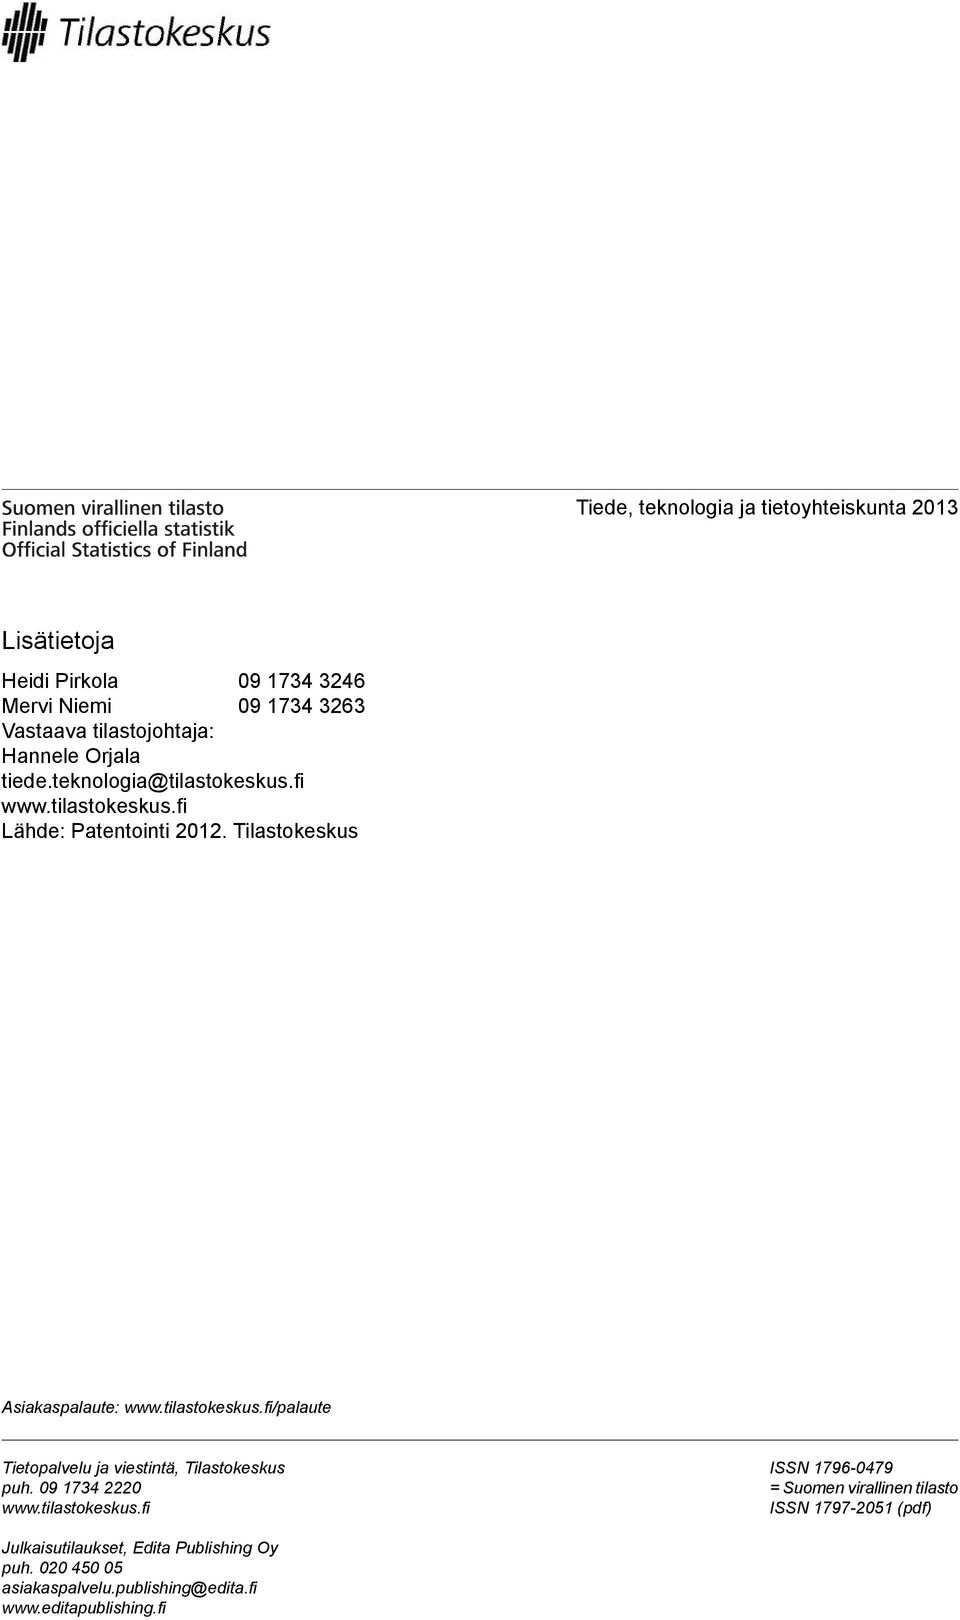 tilastokeskus.fi/palaute Tietopalvelu ja viestintä, Tilastokeskus puh. 0 0 www.tilastokeskus.fi ISSN -0 = Suomen virallinen tilasto ISSN -0 (pdf) Julkaisutilaukset, Edita Publishing Oy puh.